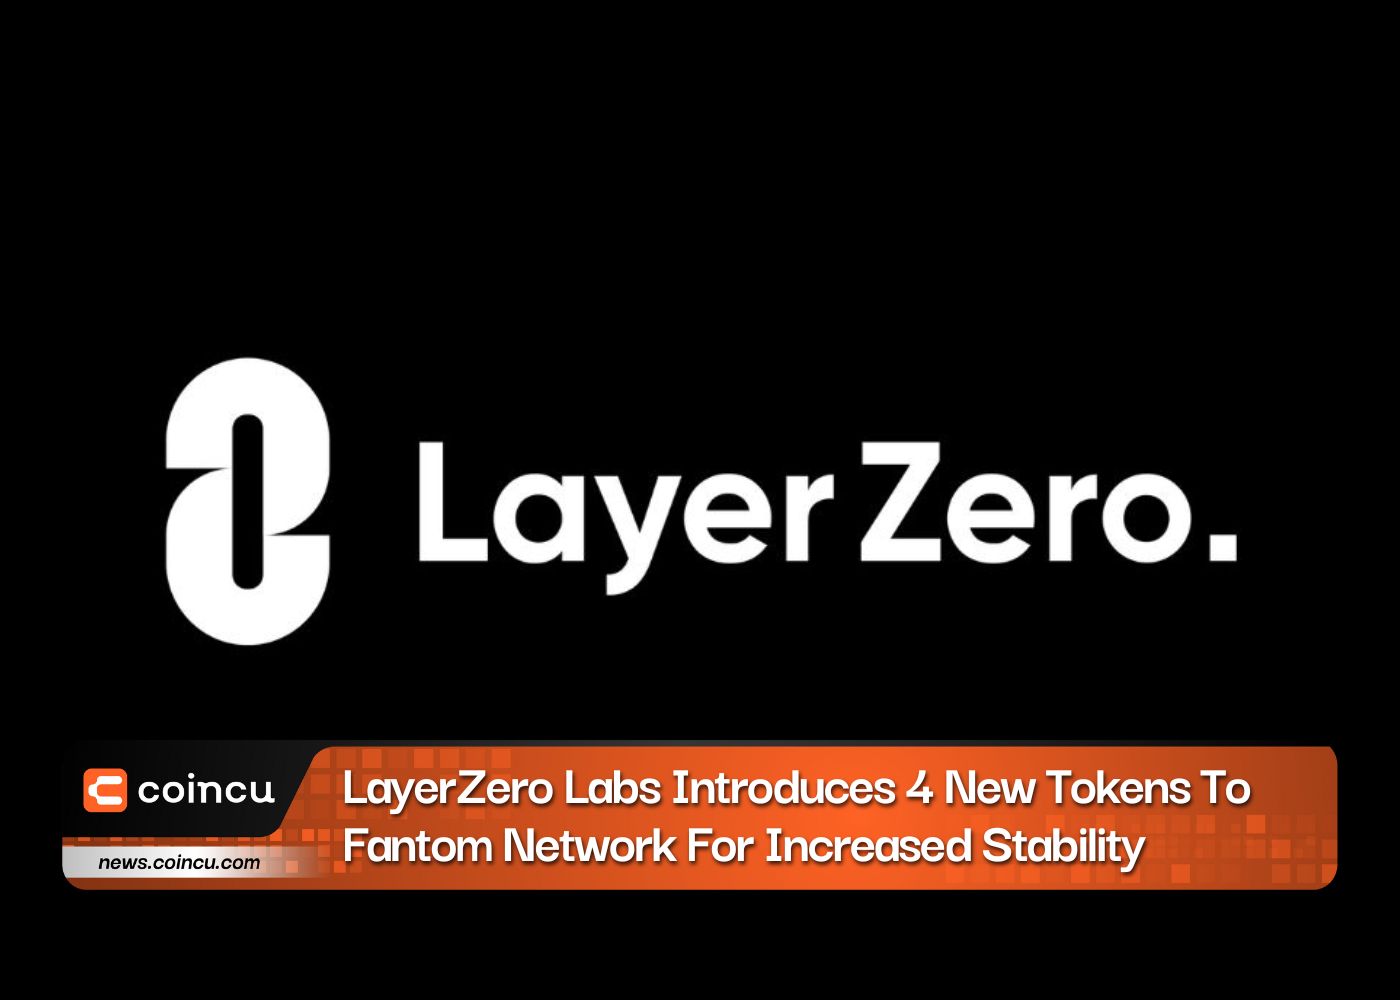 LayerZero Labs giới thiệu 4 mã thông báo mới cho mạng Fantom để tăng tính ổn định